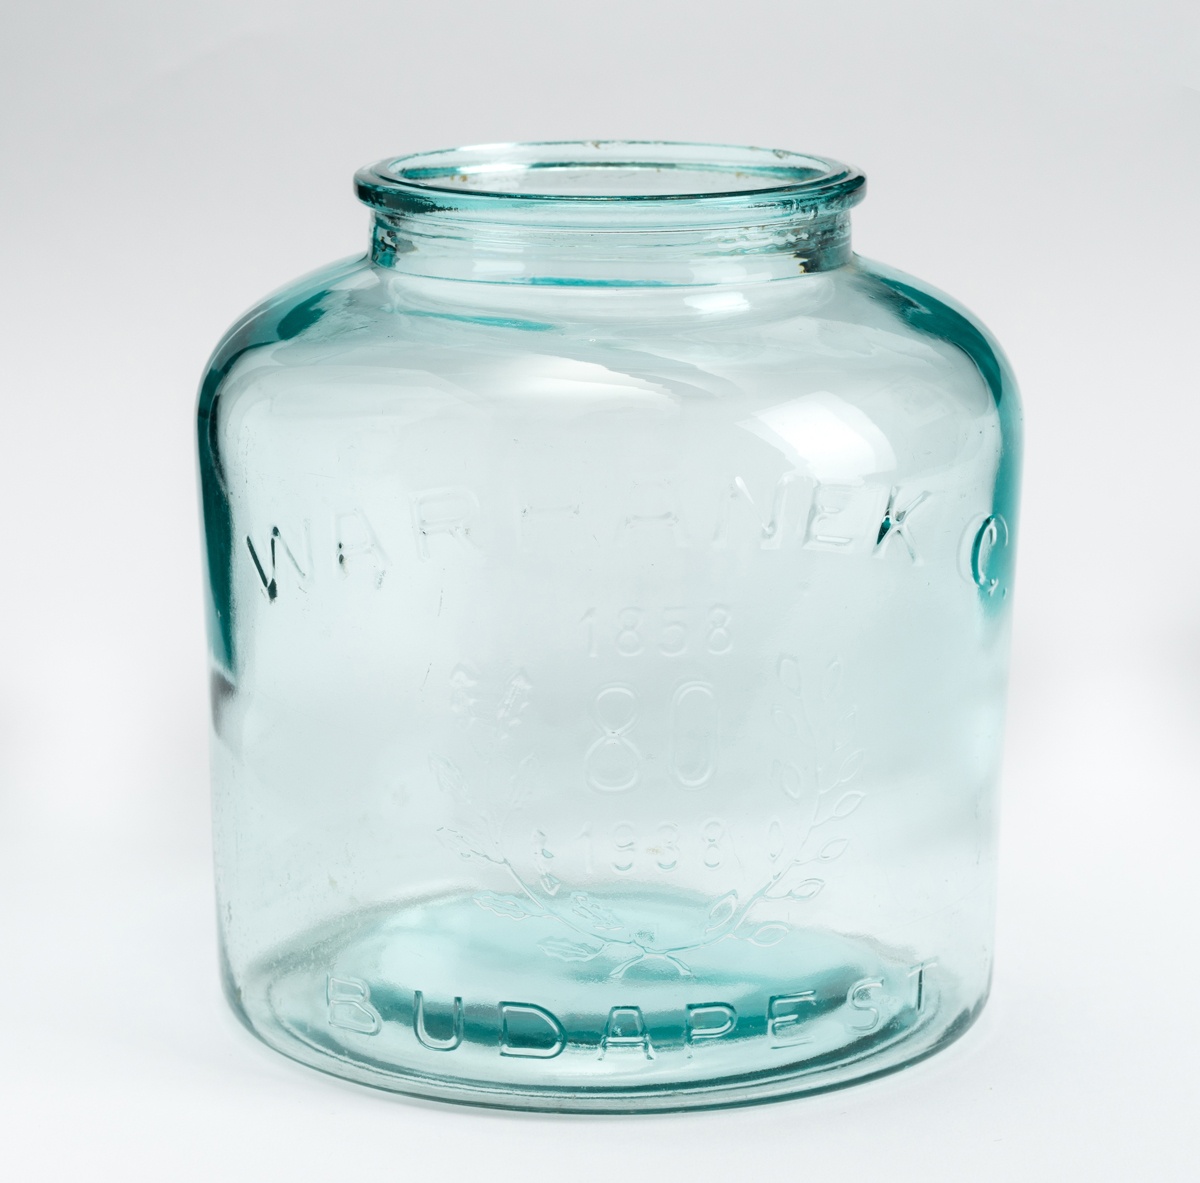 Befőttes üveg (Gyulai Német Tájház CC BY-NC-SA)